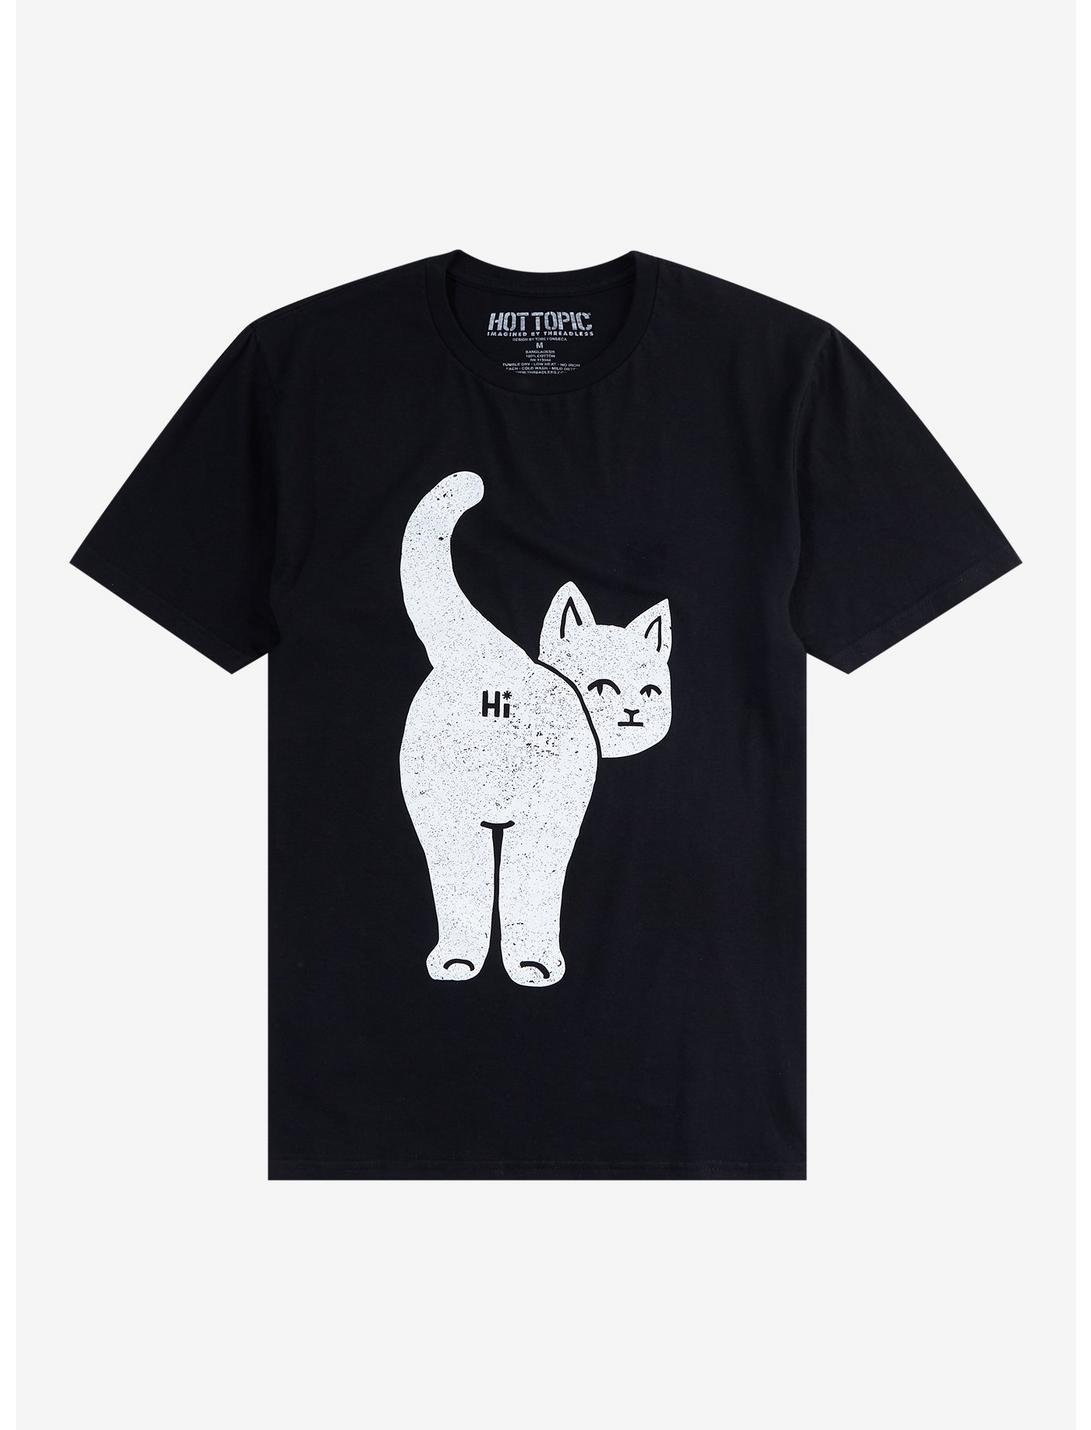 Cat Hi T-Shirt By Tobe Fonseca, BLACK, hi-res